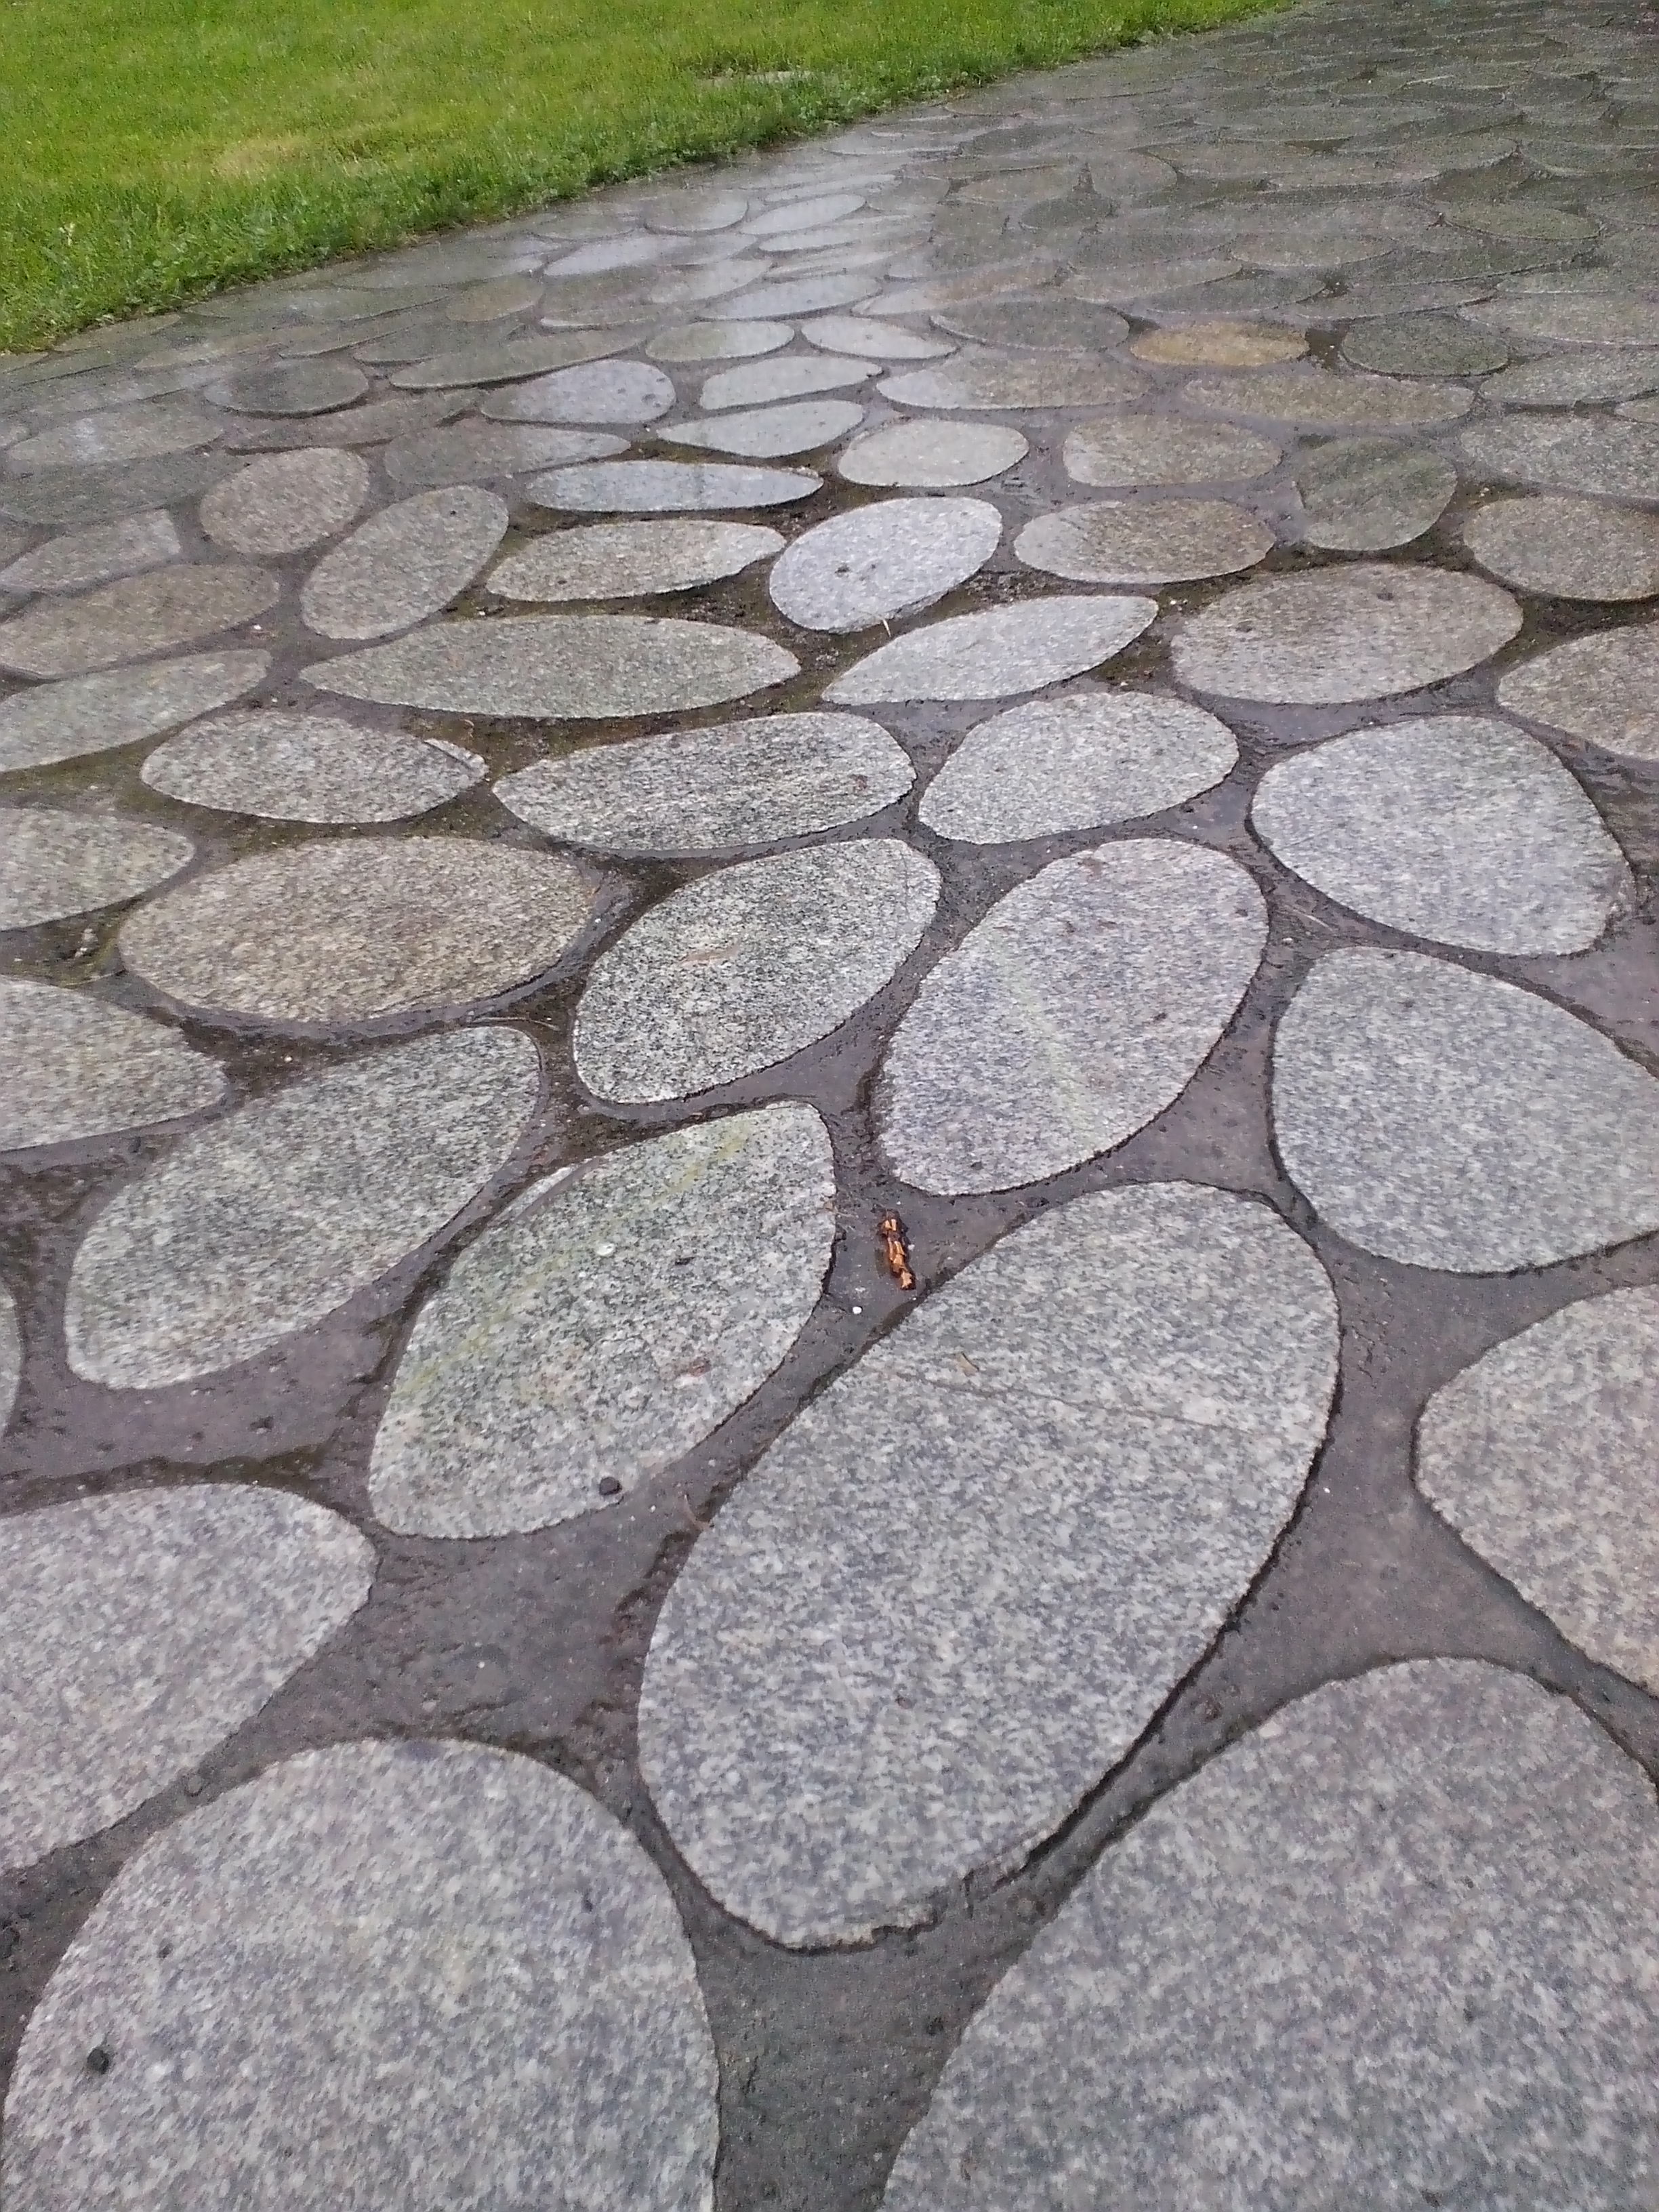 te kamienne płyty bardzo dobrze wyglądają w nowoczesnym ogrodzie, ale są bardzo śliskie